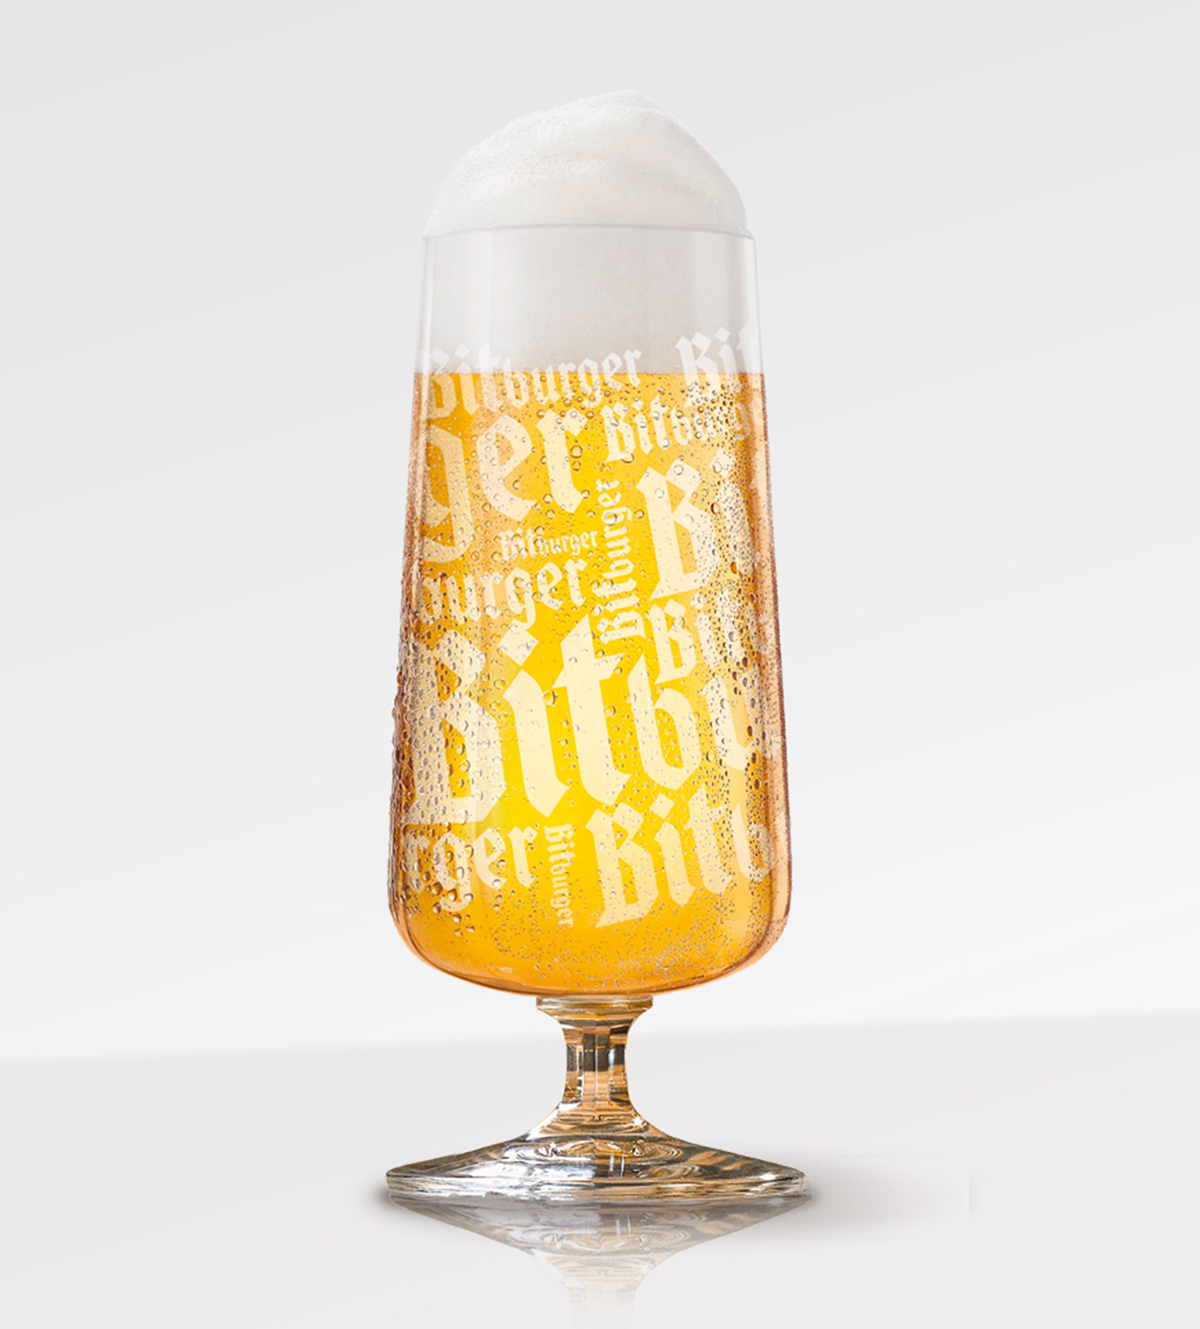 Bitburger beer glas edition